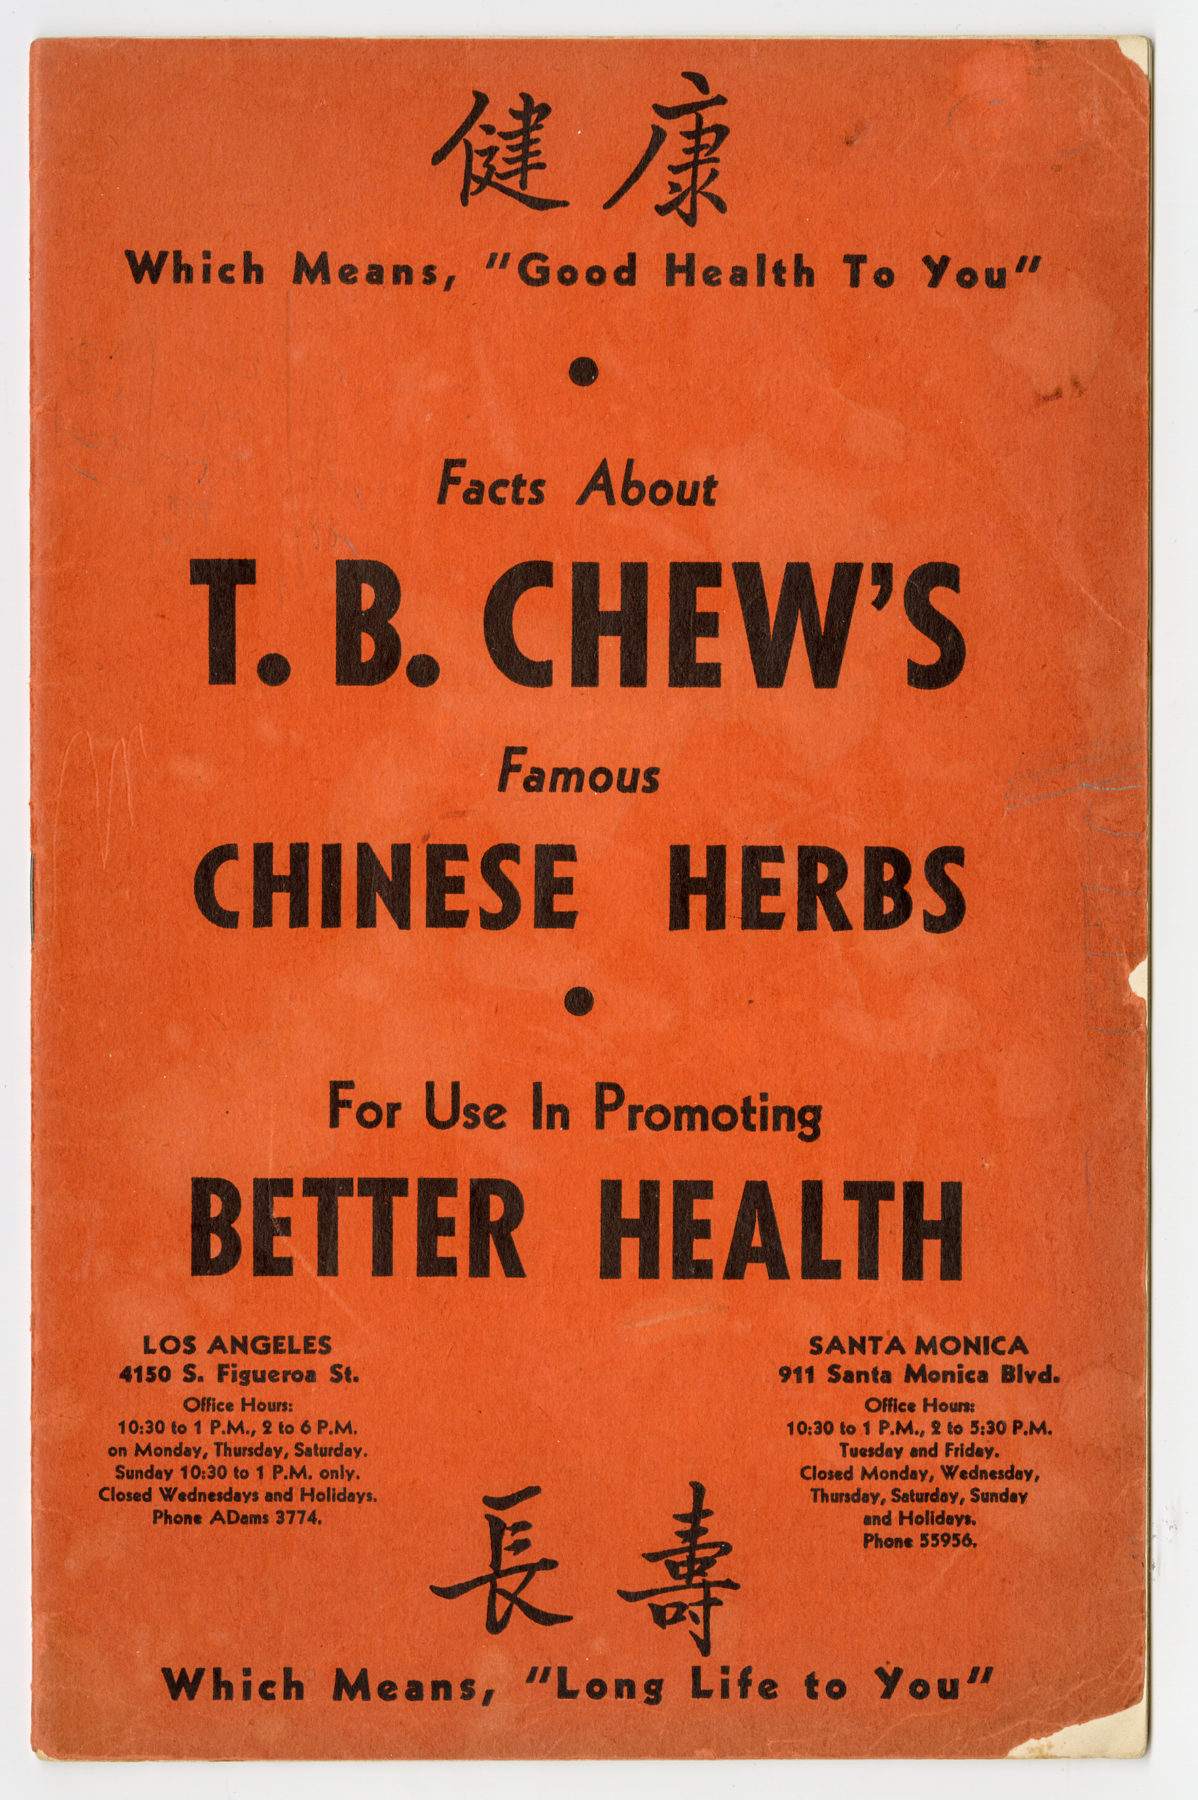 关于T.B. Chew's Famous Chinese Herbs 小册子中的一些事实。由 Roy Delbyck 捐赠，美国华人博物馆 (MOCA) 馆藏。